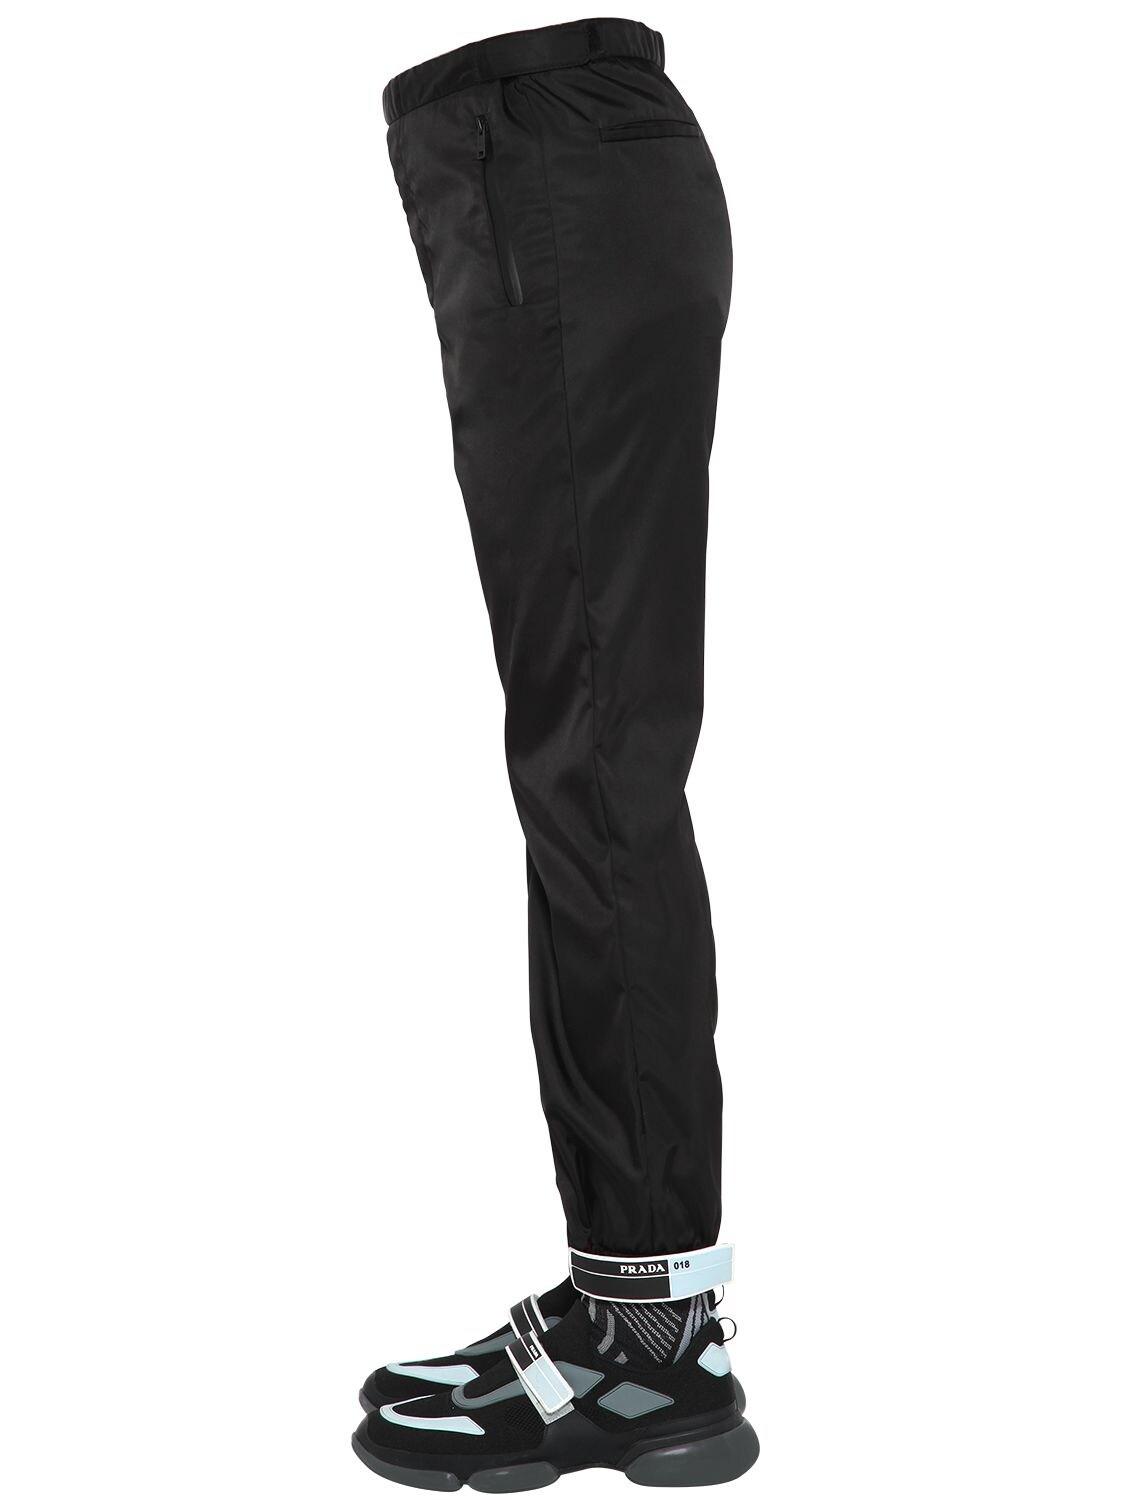 Men's Luxury Jogging Pants - Fendi Black Nylon Jogging Pants